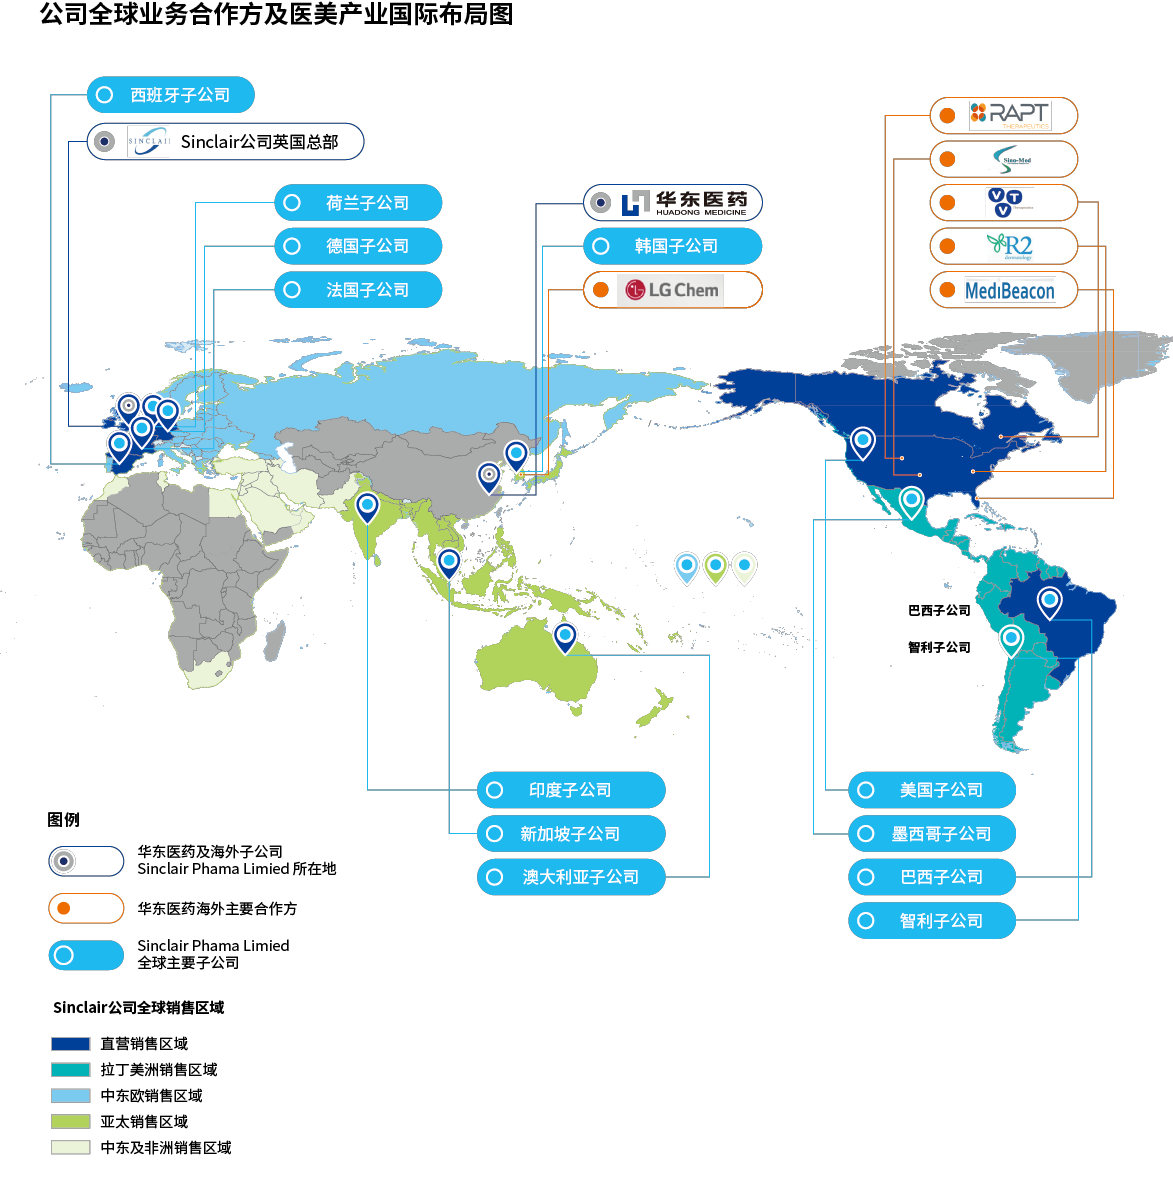 公司全球业务合作方及医美产业国际布局图